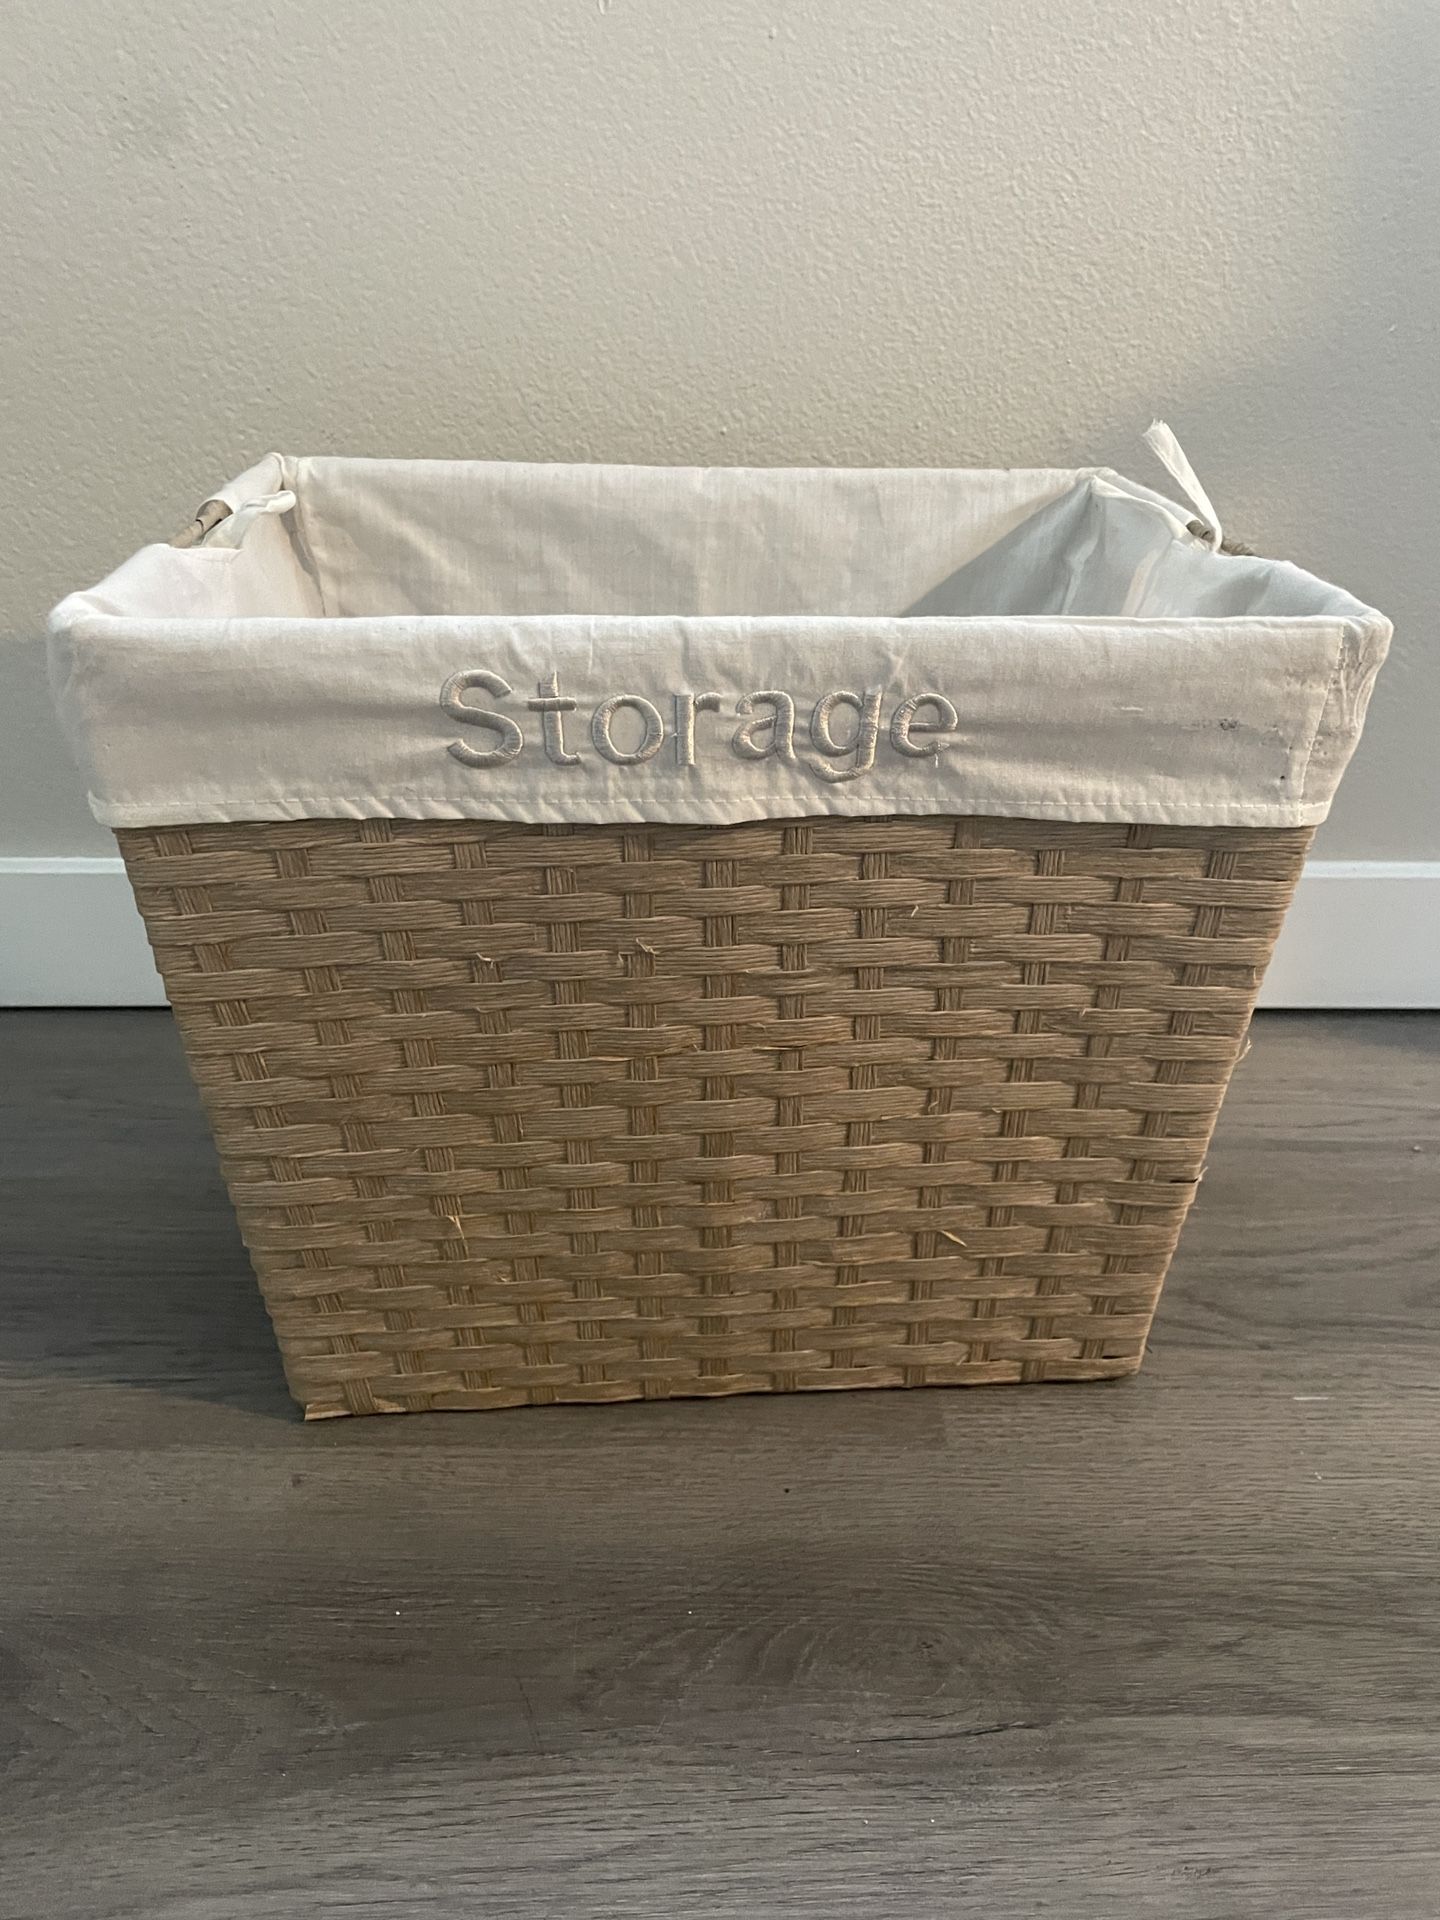 Small Straw Storage Bin